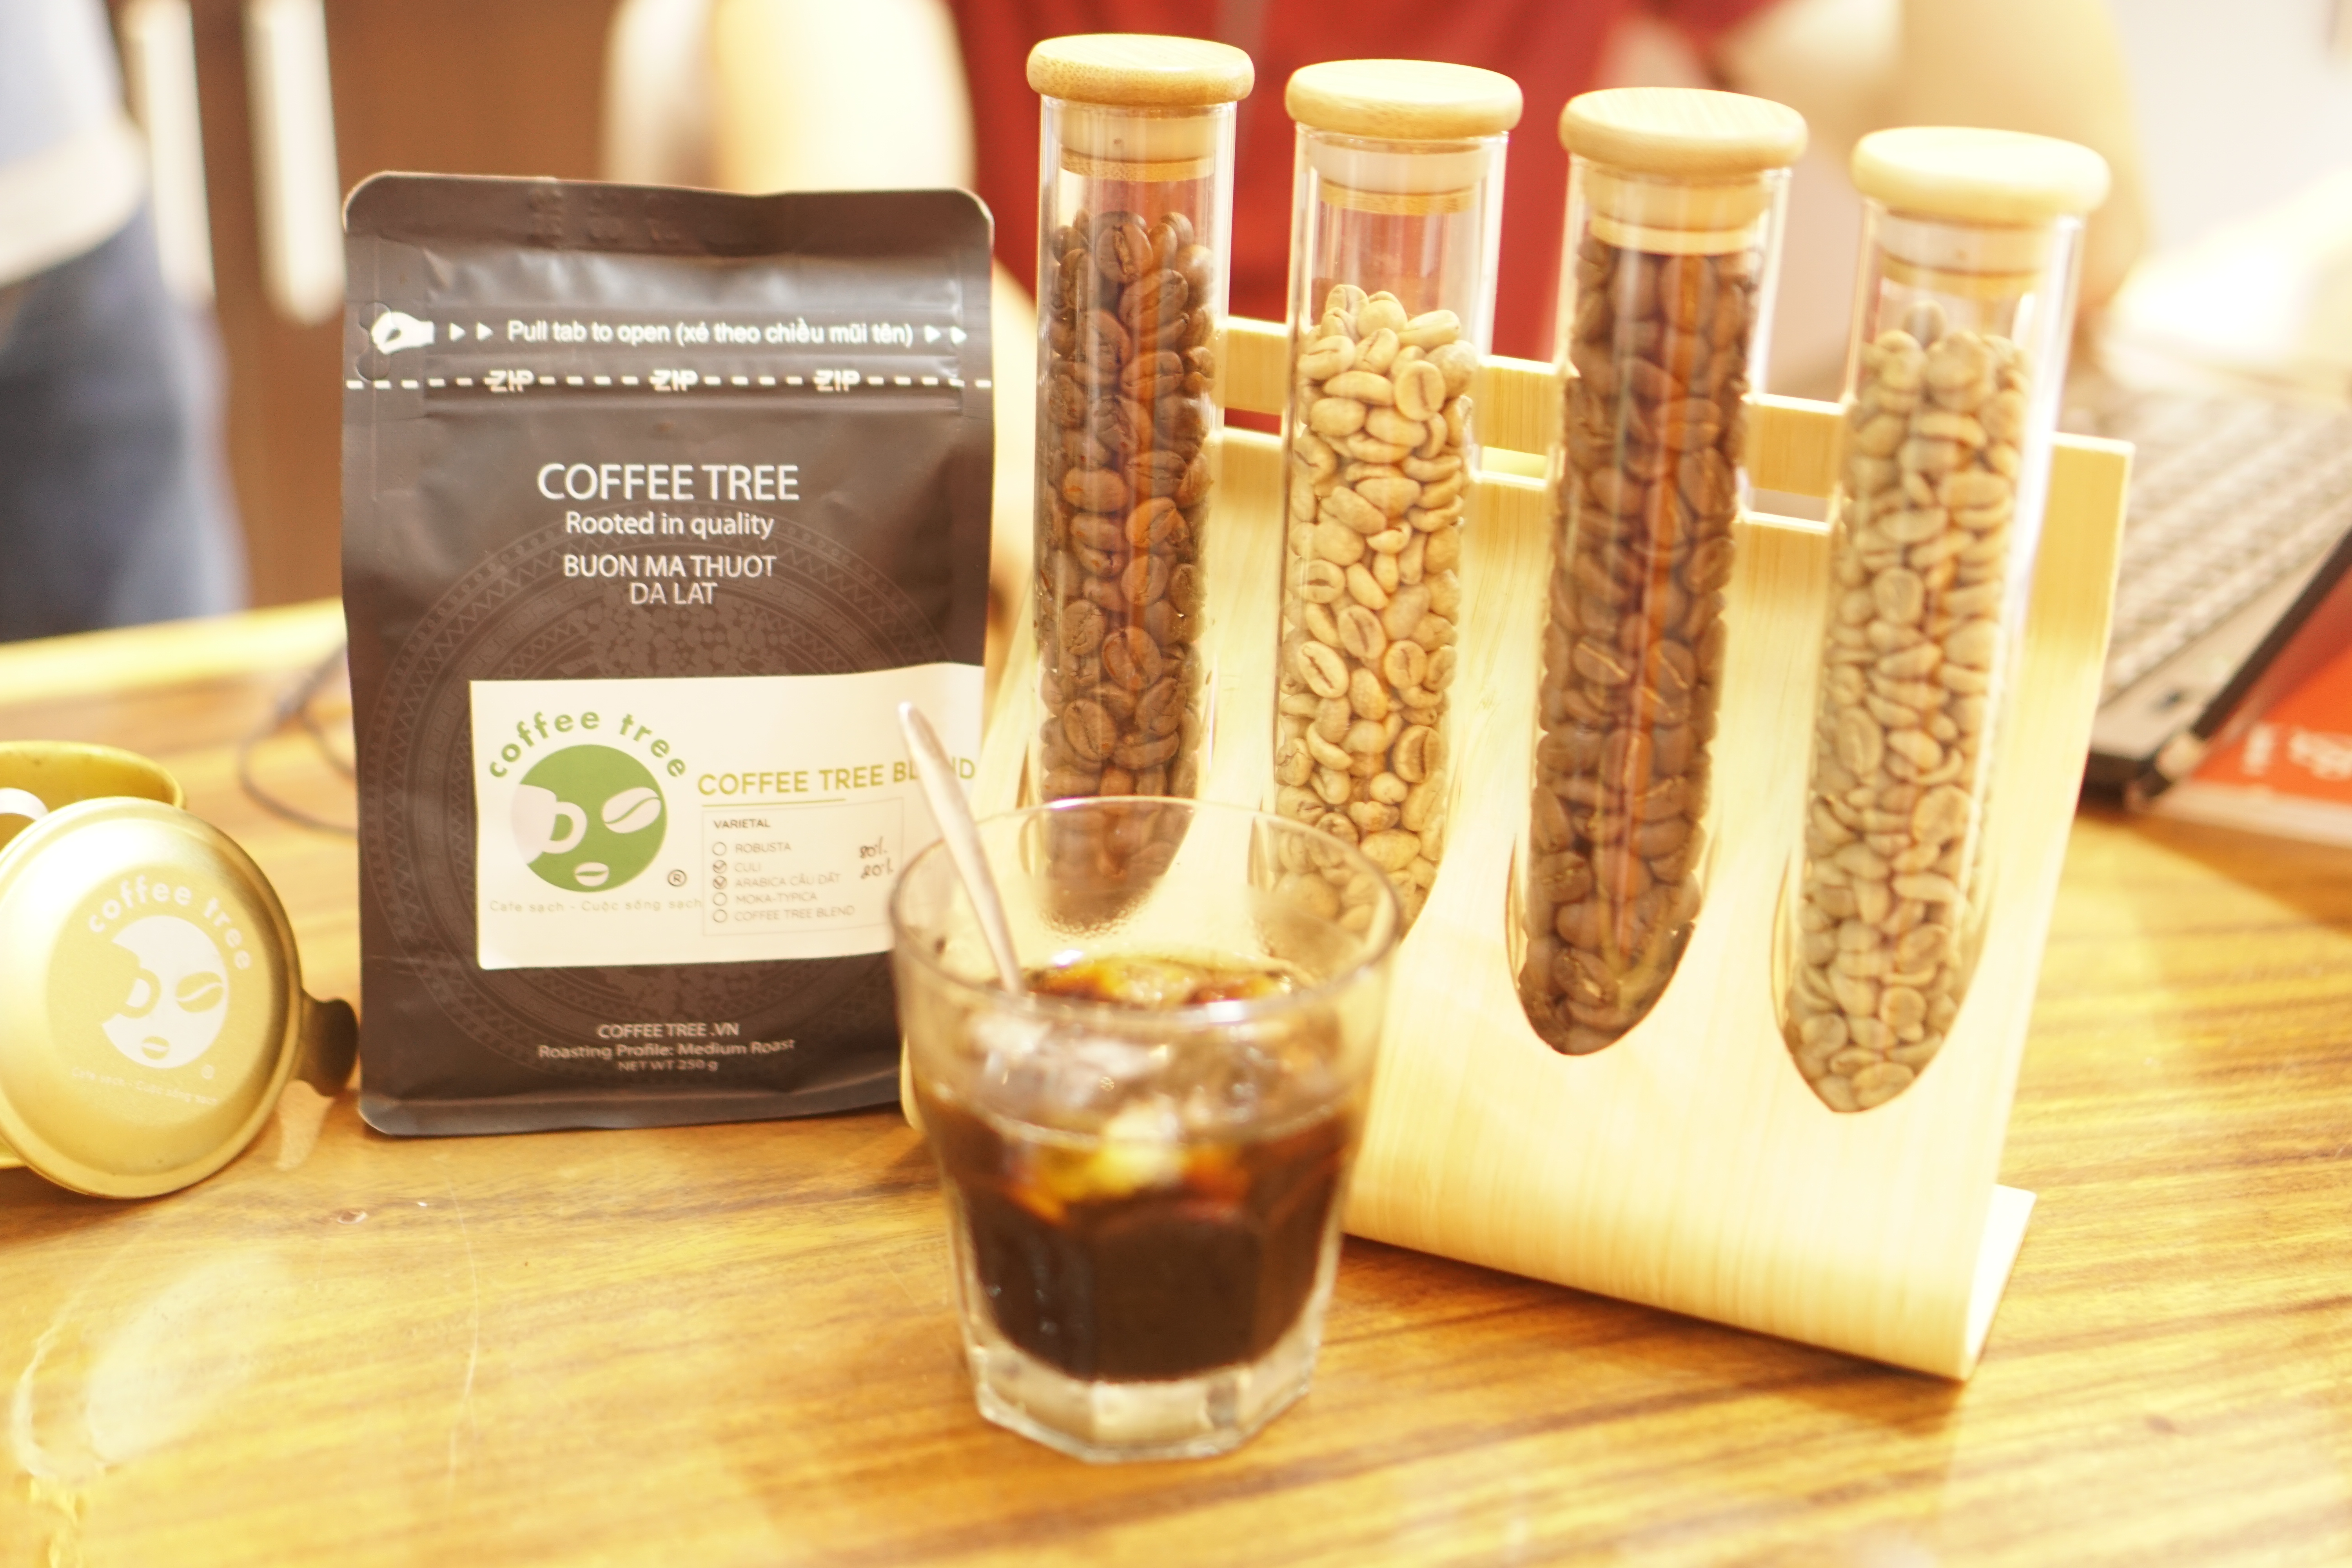 Cà phê hạt 100% nguyên chất truyền thống số 3 Coffee Tree 1kg thơm ngon, đậm đà, gu mạnh